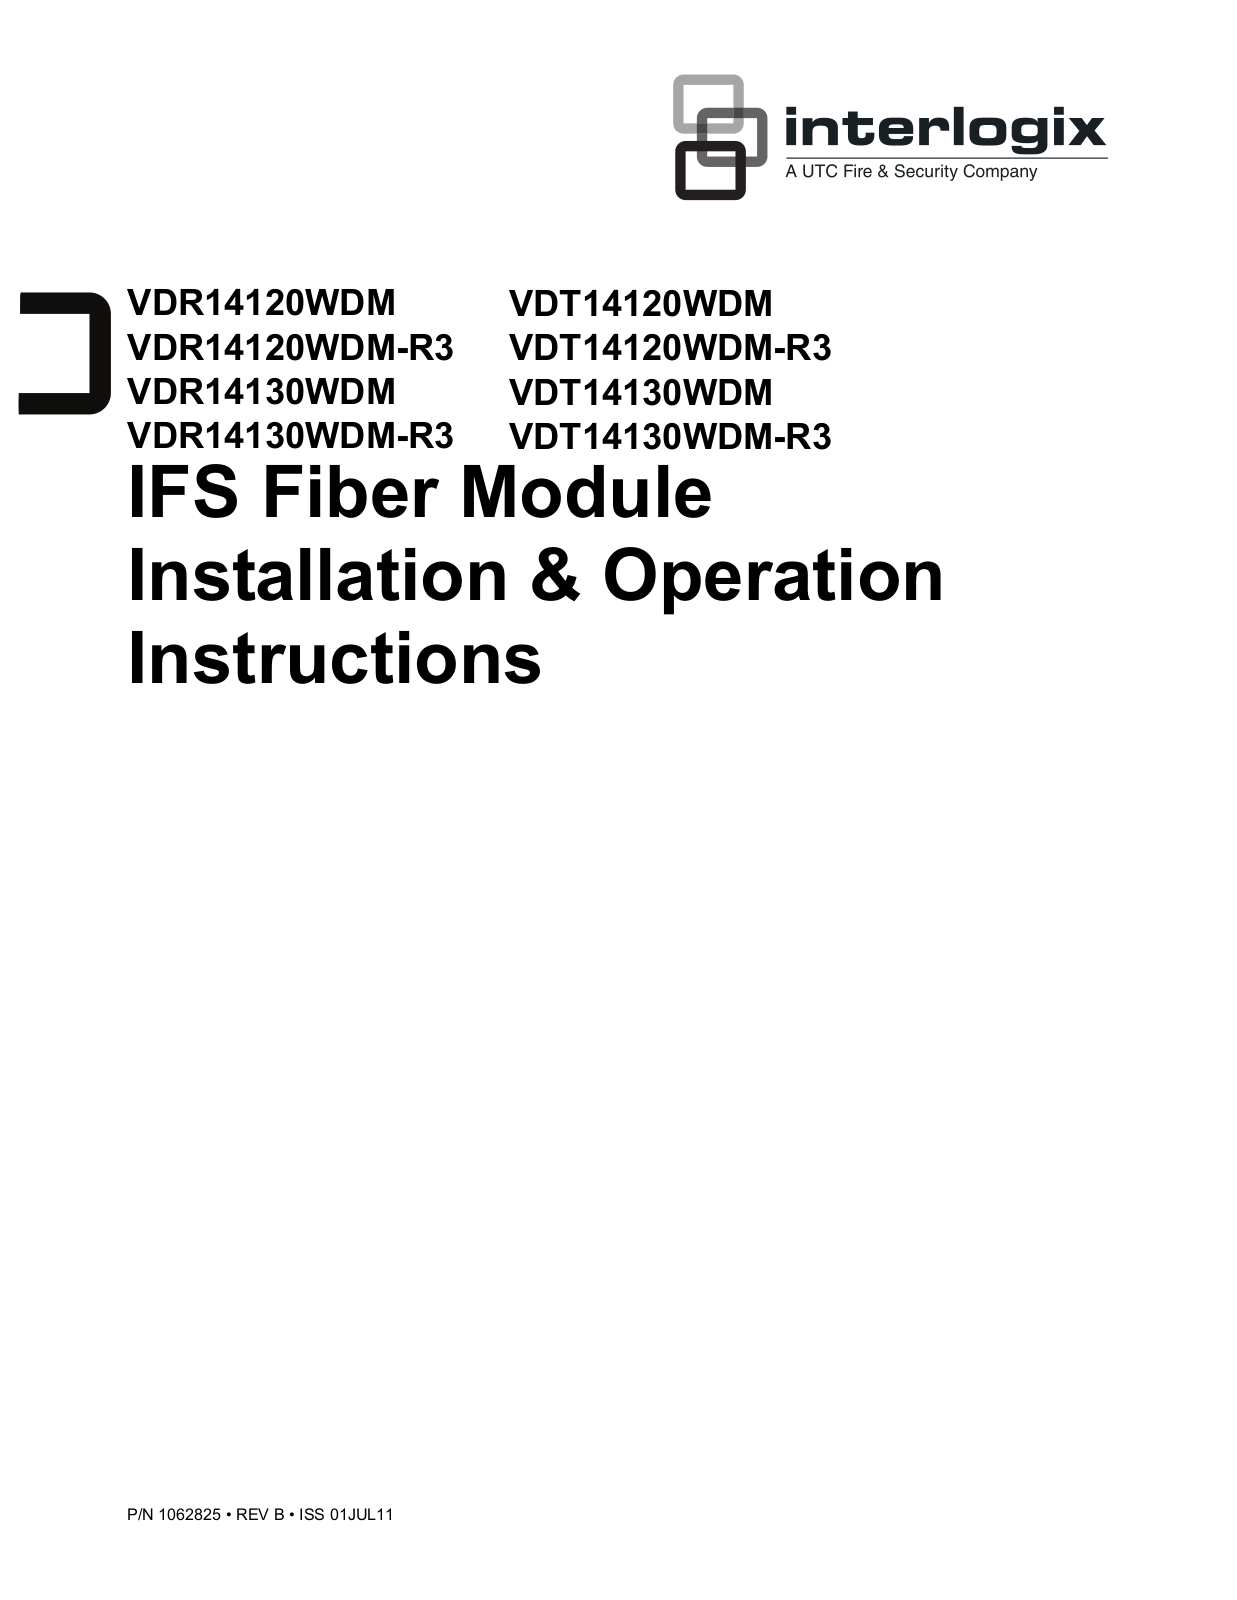 Interlogix VDR14130WDM User Manual